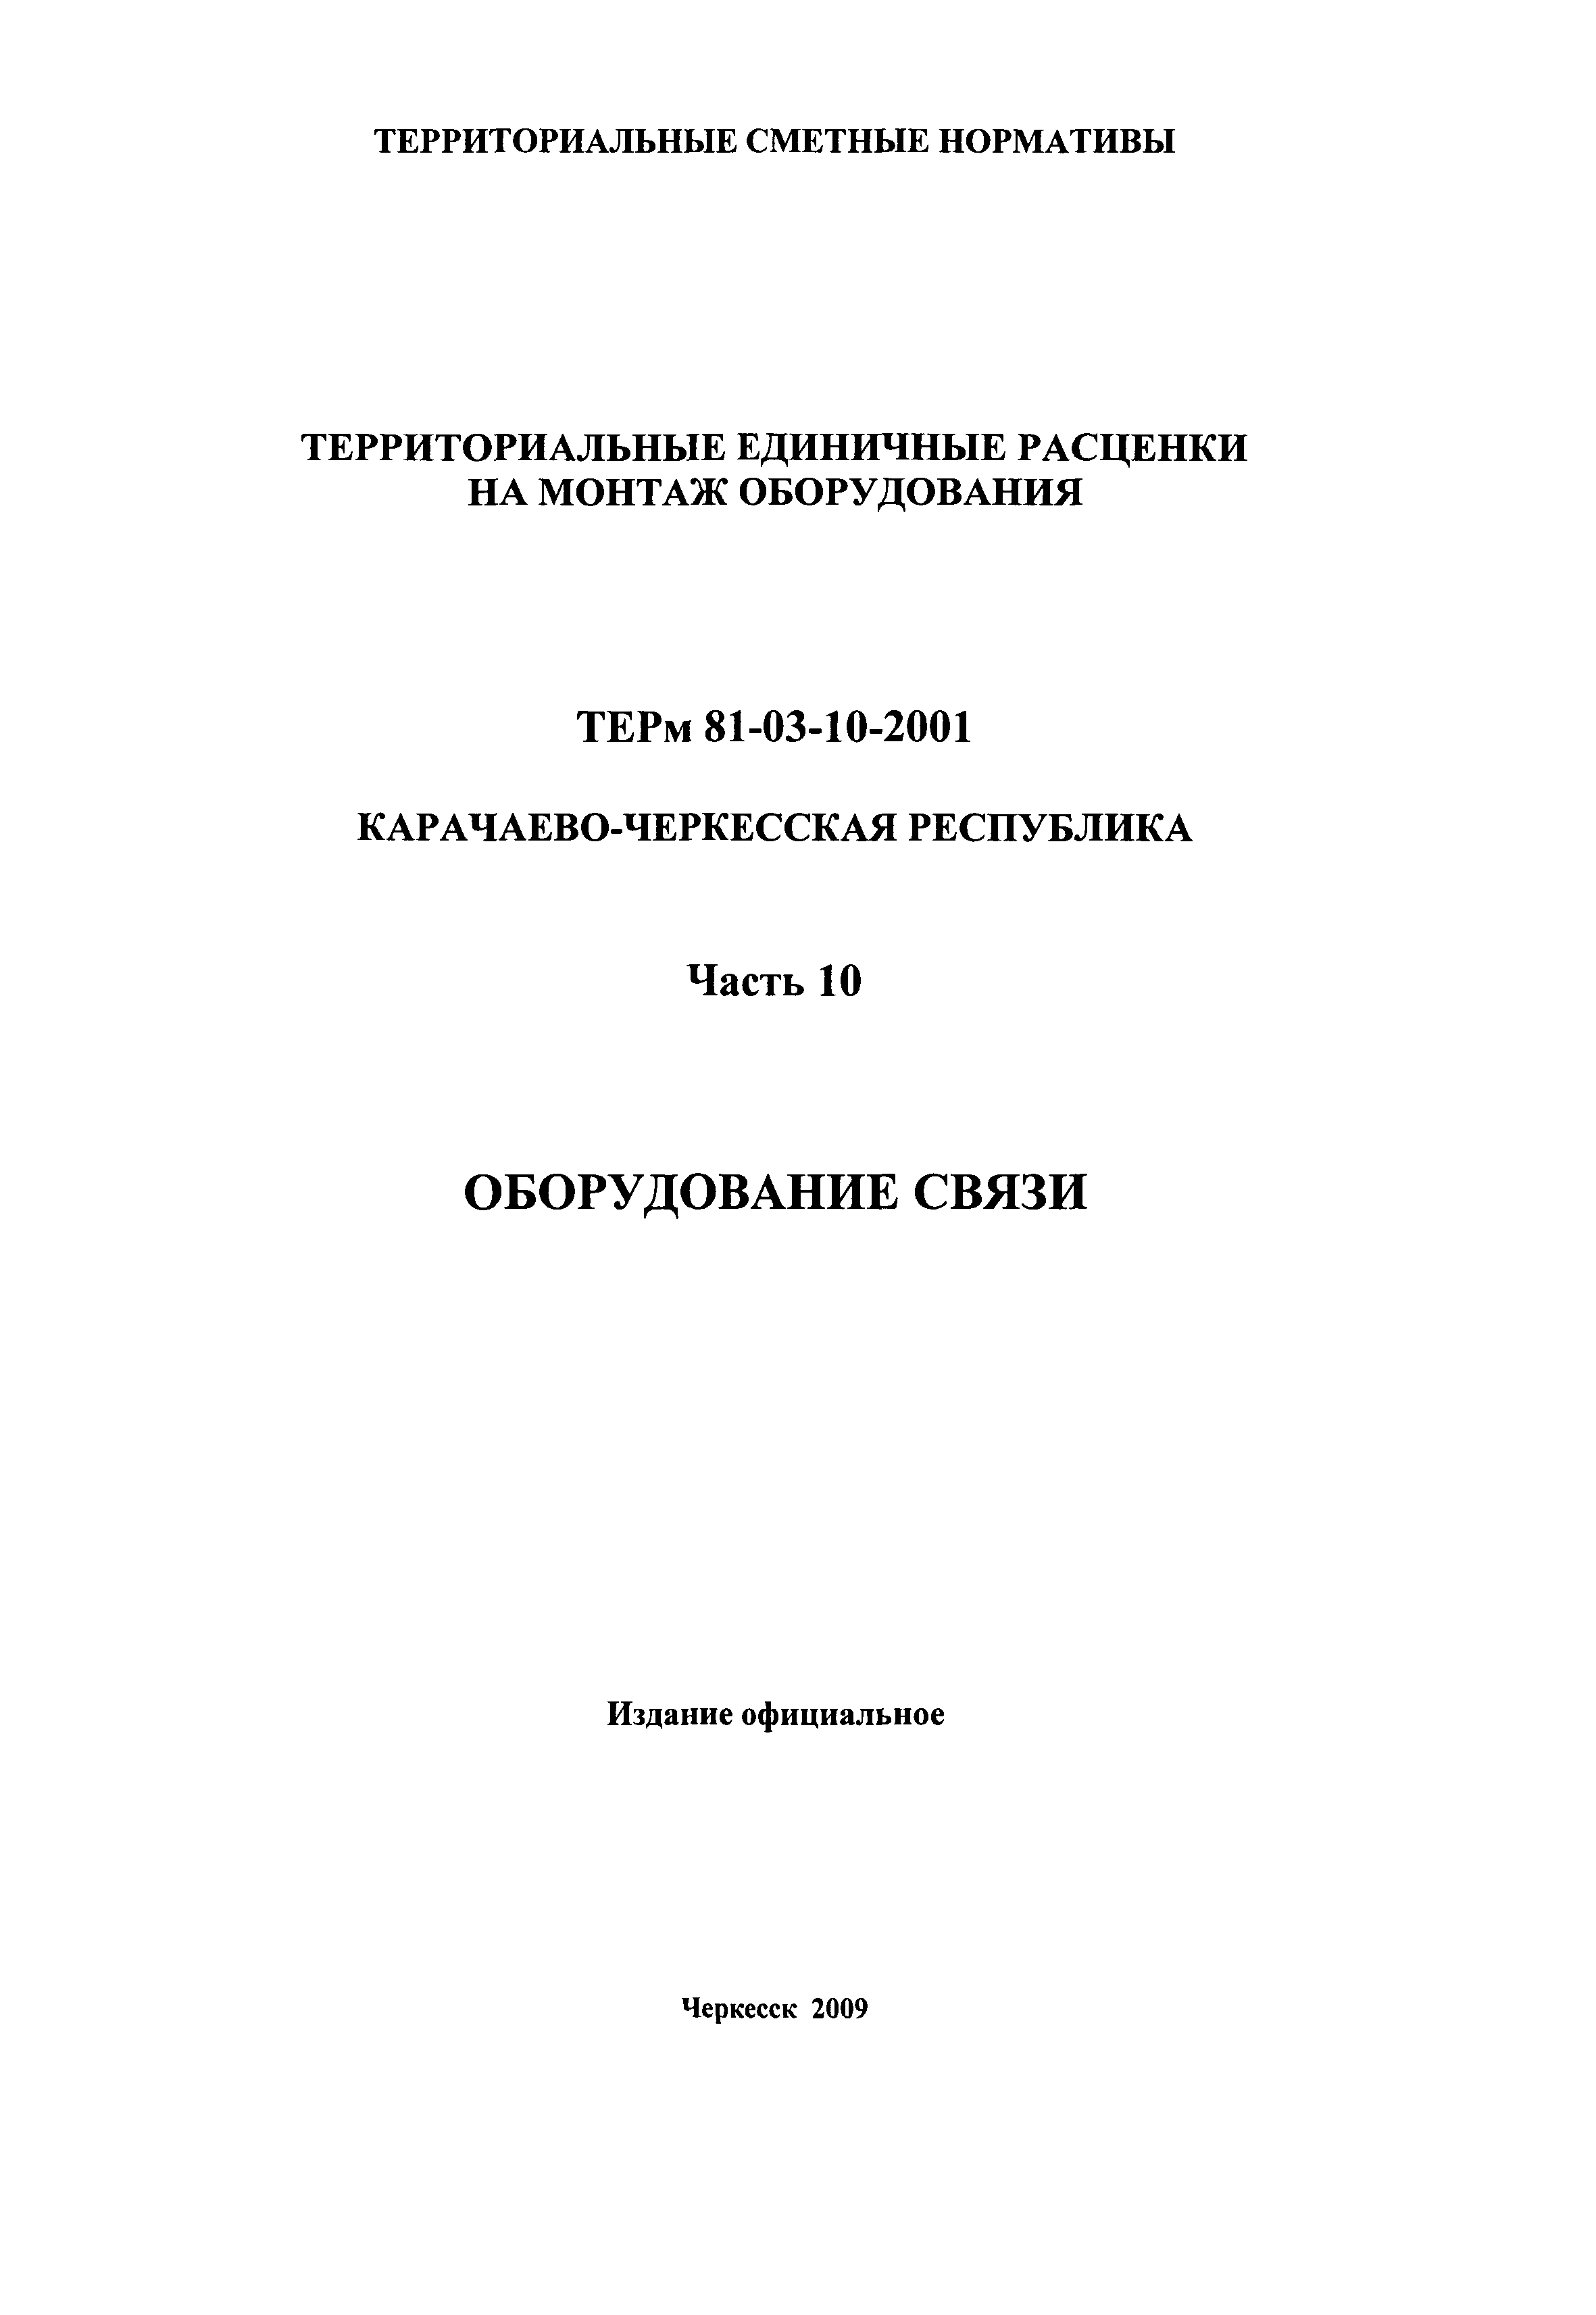 ТЕРм Карачаево-Черкесская Республика 10-2001